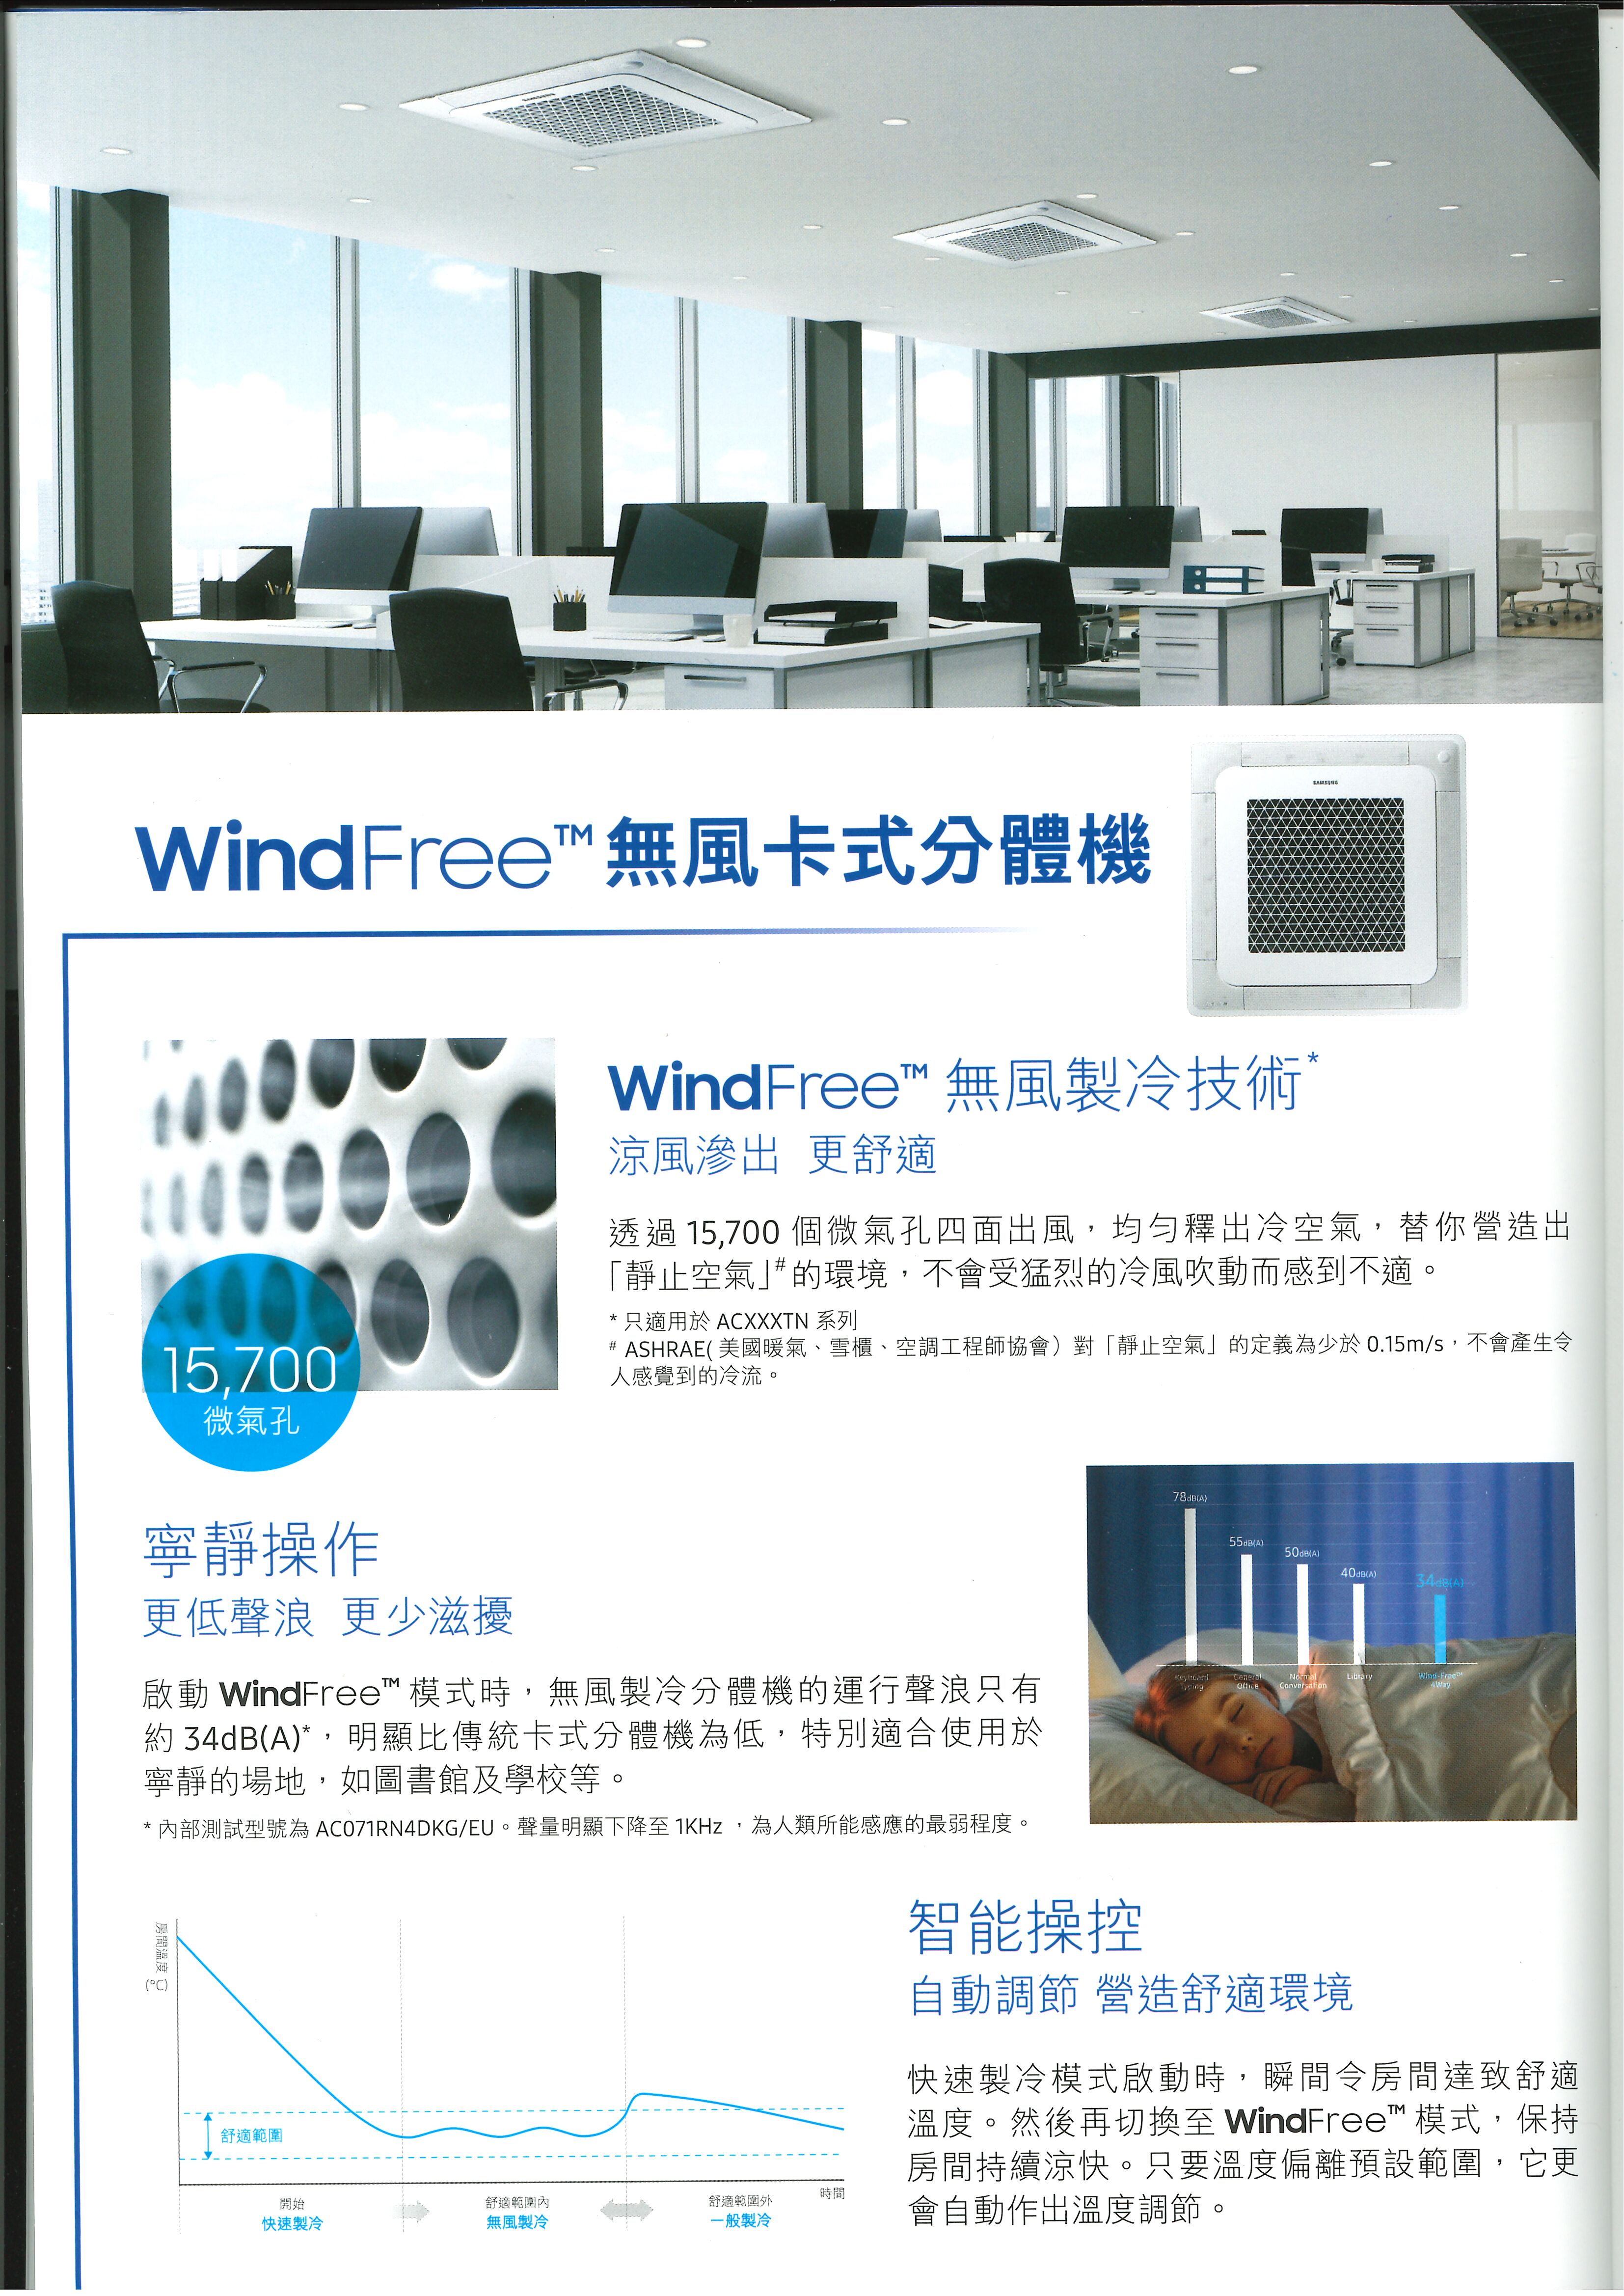 Samsung 三星 AC140TN4DKC/EA 5.5匹 WindFree 無風製冷技術 藏天花式冷氣機